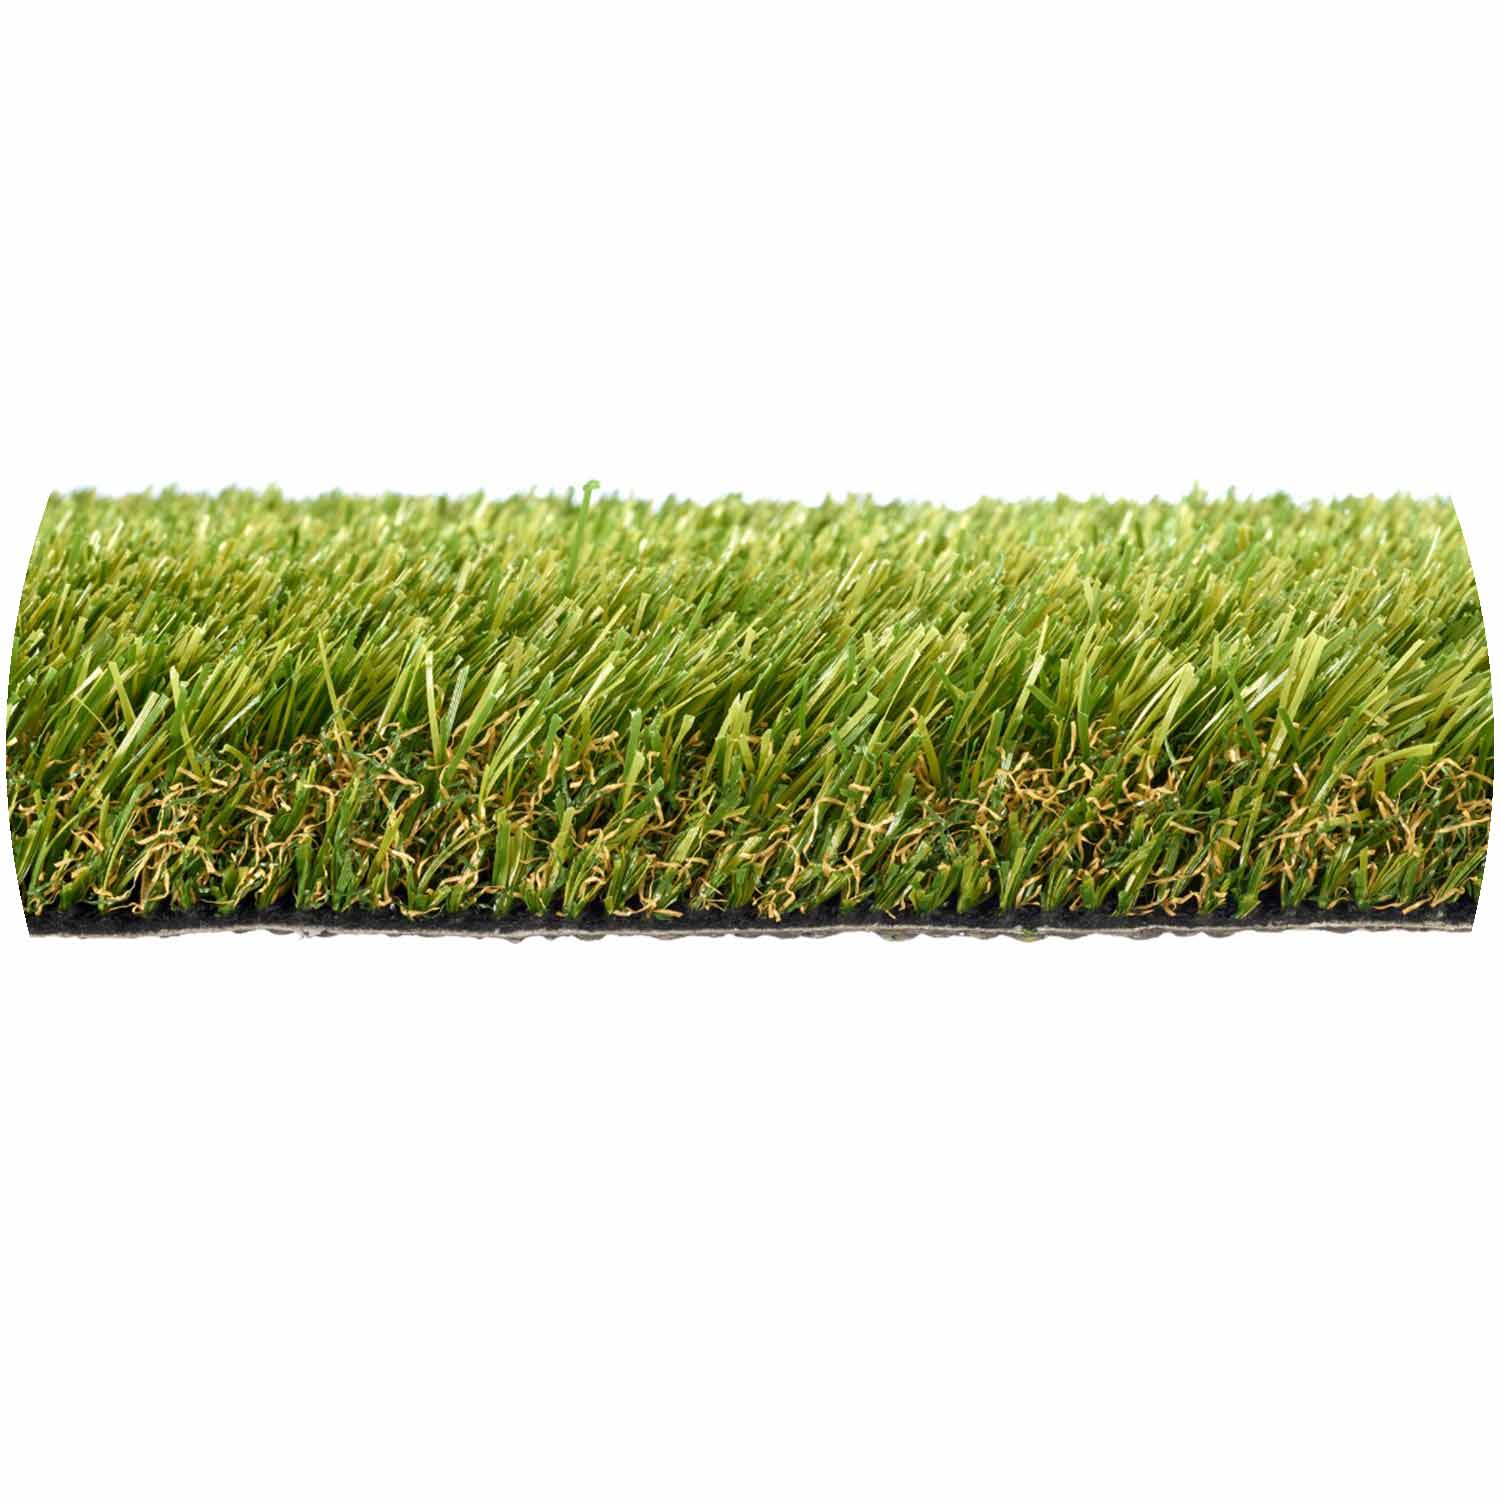 Huracan 30mm Pile Artificial Grass per mtr